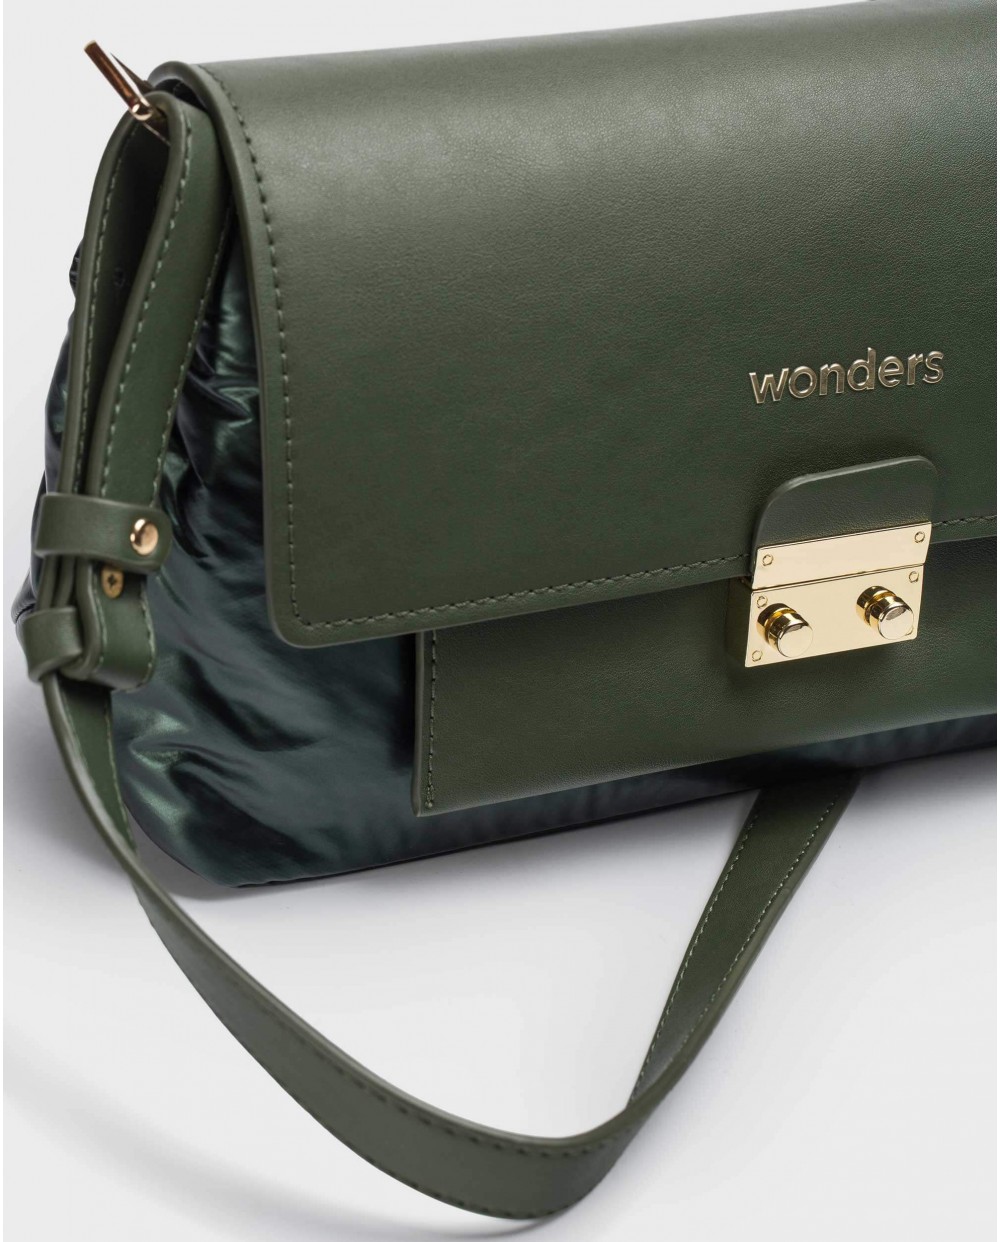 Wonders-Bags-ZENDA Green Bag